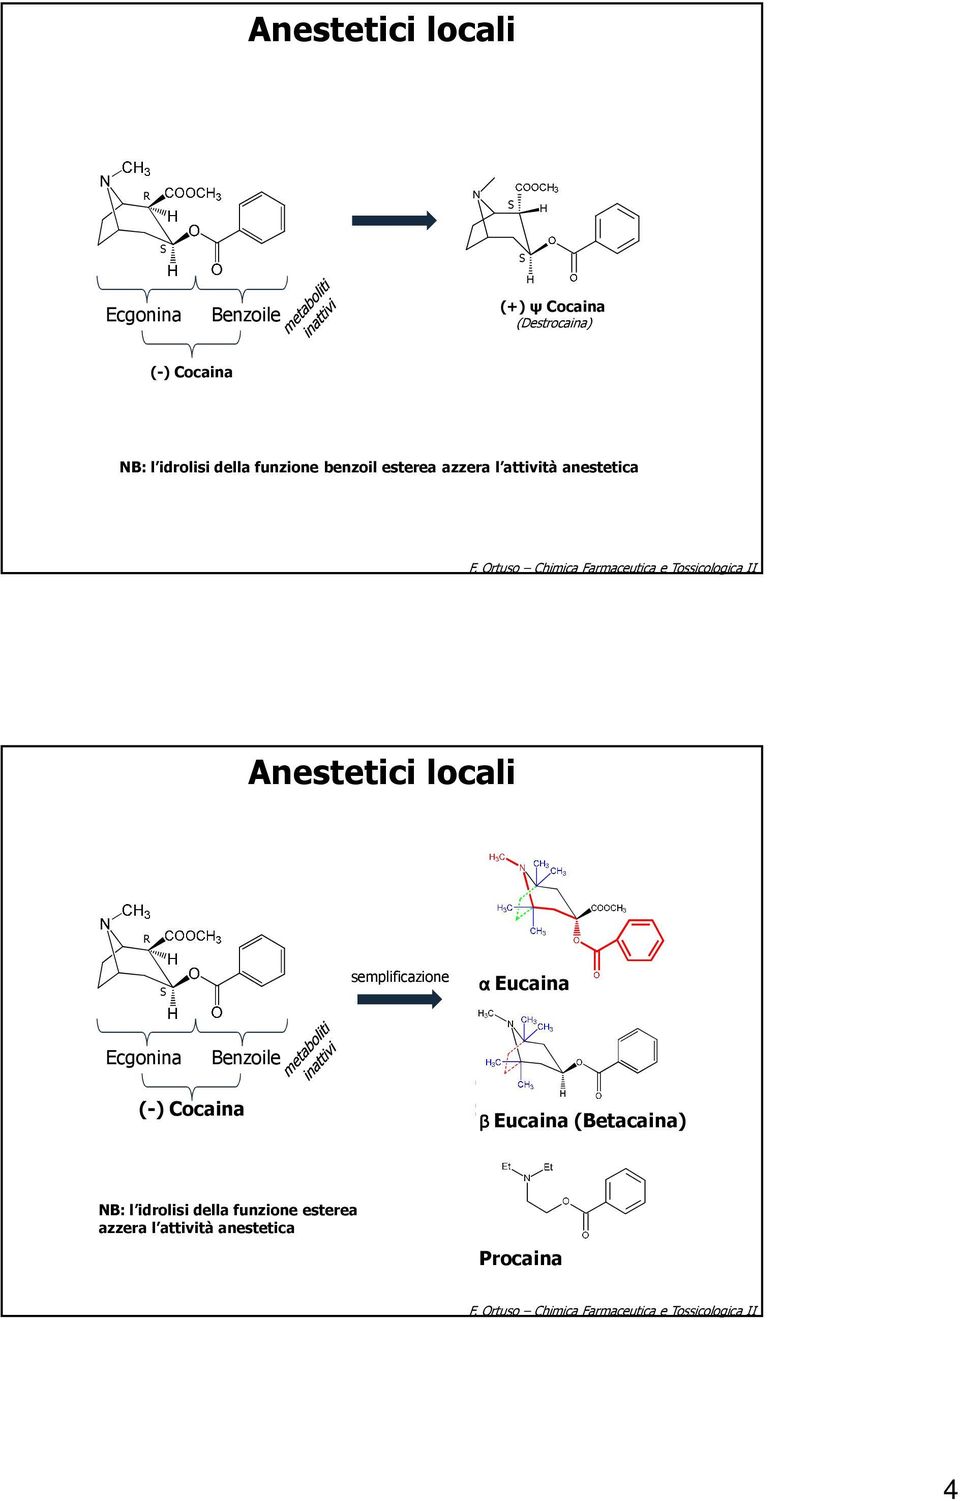 rtuso himica armaceutica e Tossicologica II R S semplificazione α Eucaina Ecgonina Benzoile (-)